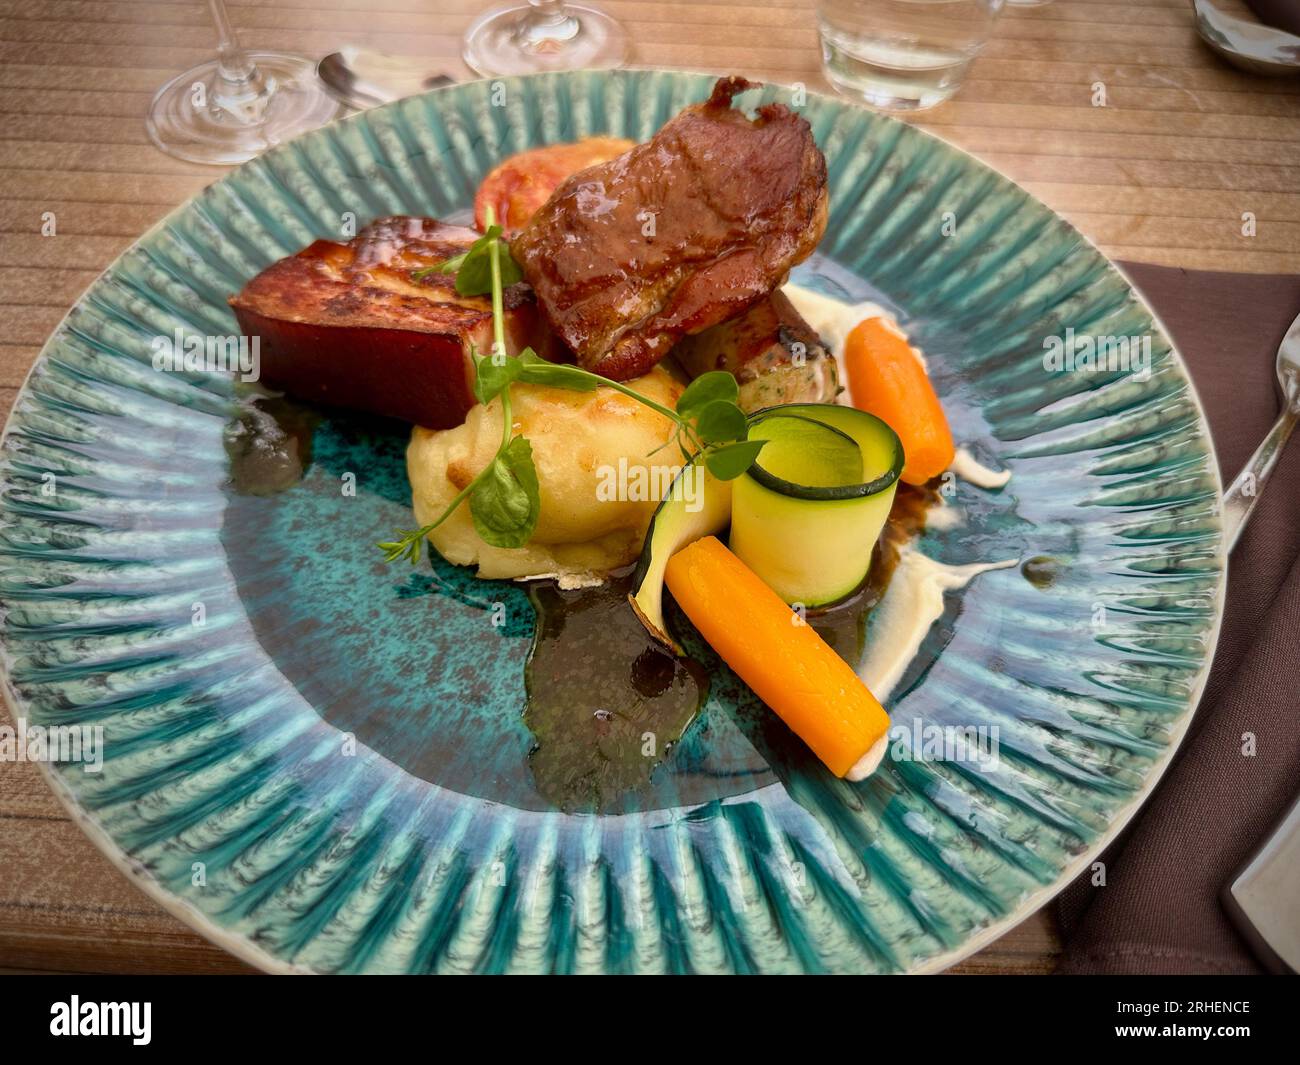 Delizie gastronomiche: Colorato pasto di maiale presso un ristorante, servito su un piatto blu Foto Stock